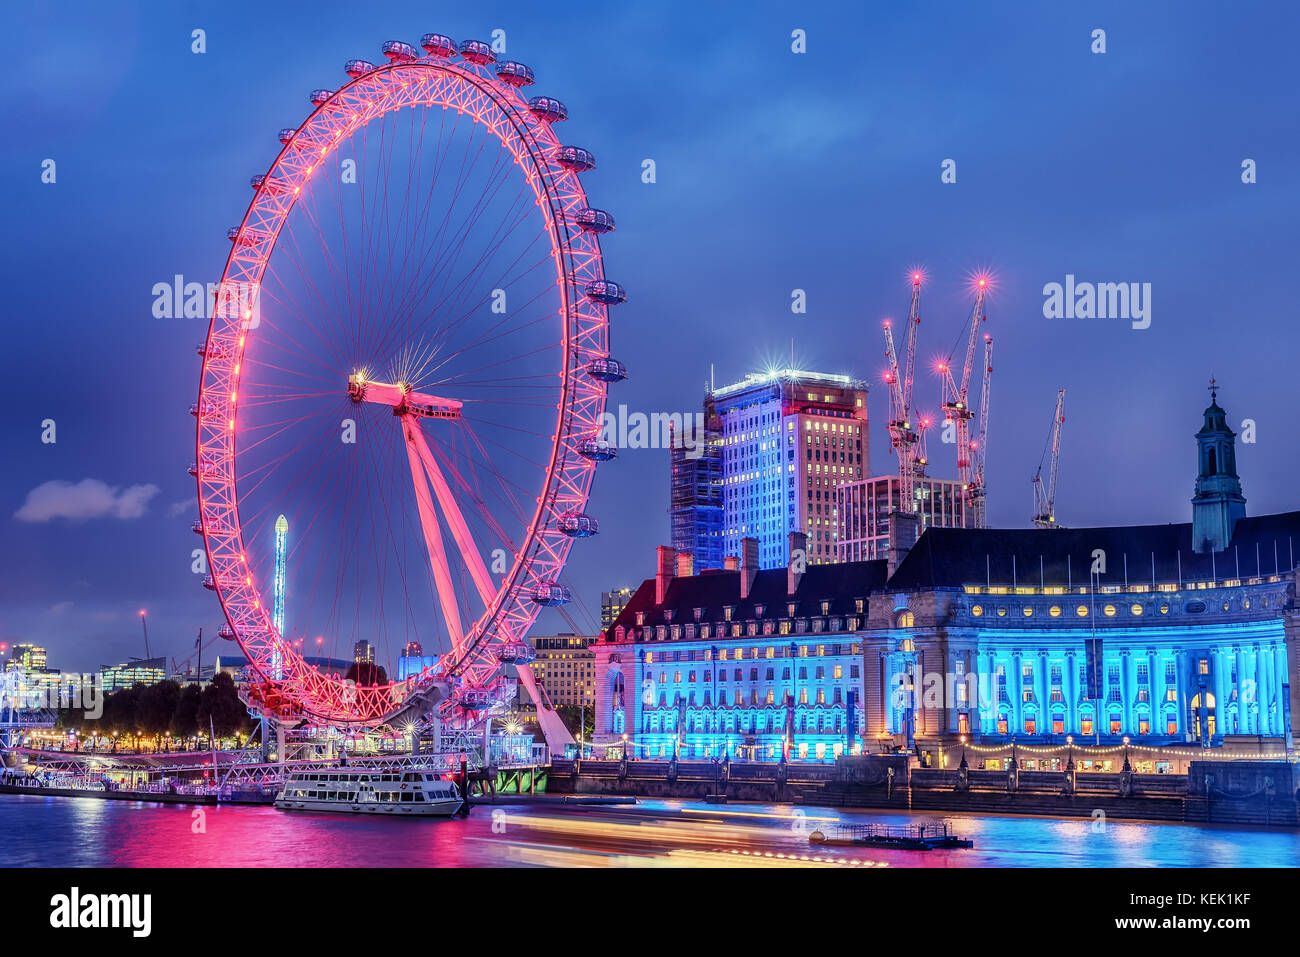 Inghilterra, Regno Unito: London Eye, una gigantesca ruota panoramica sulla banca del fiume Tamigi Foto Stock